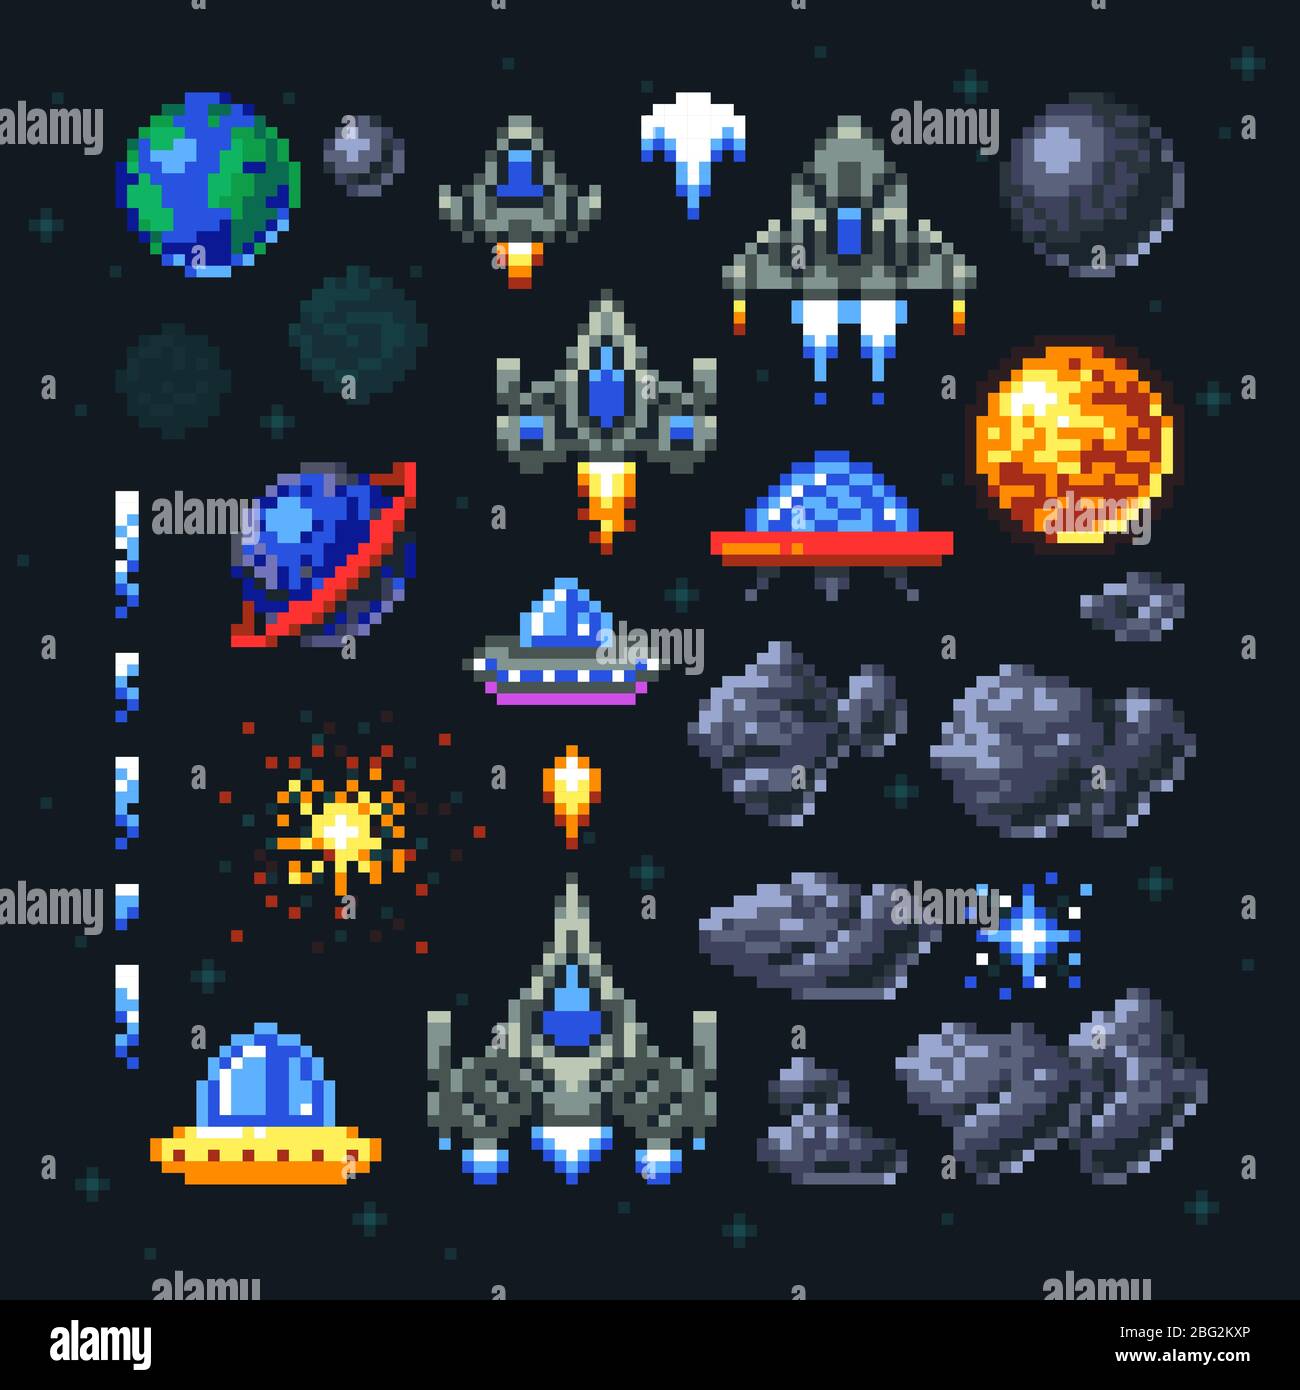 Elementi pixel spazio arcade retrò. Invasori, navicelle, pianeti e set di vettori ufo. Video arcade gioco in pixel art, illustrazione di astronave an Illustrazione Vettoriale